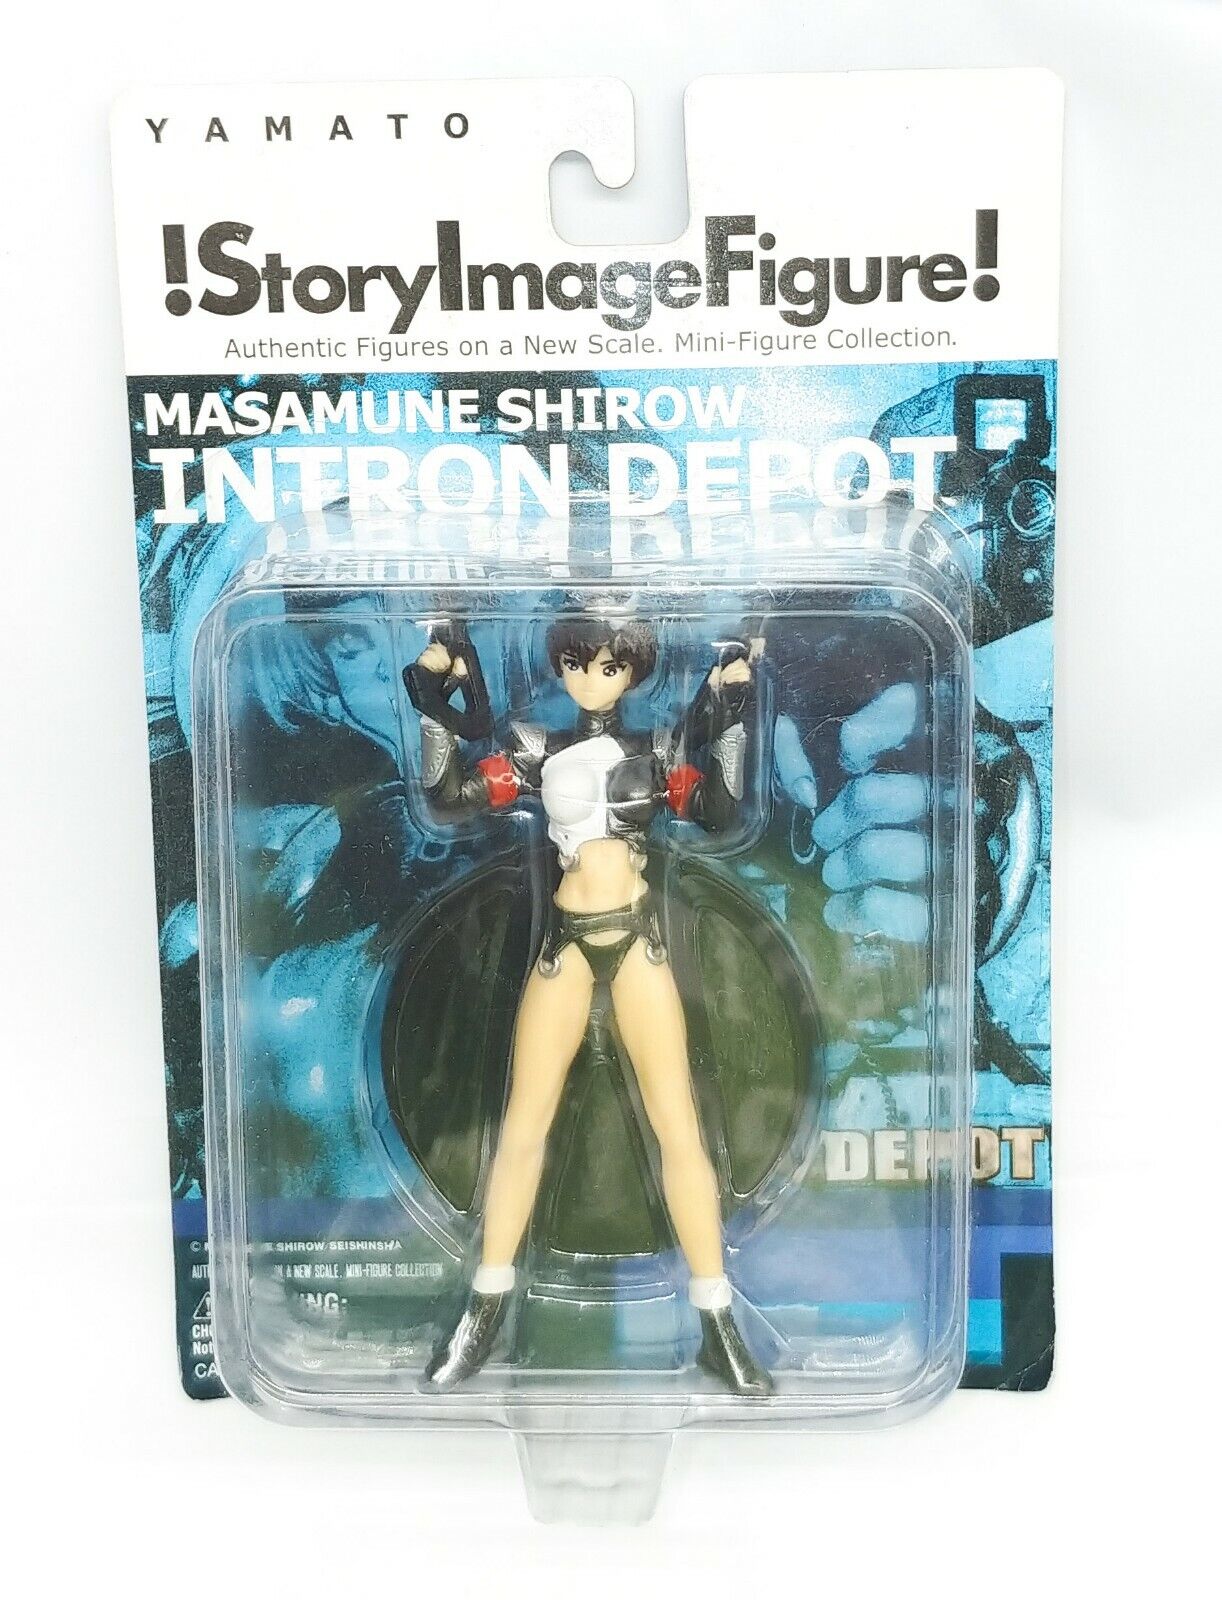 Yamato Story Image Figure Rare Masamune Shirow Intron Depot Series 2 "Shawn"